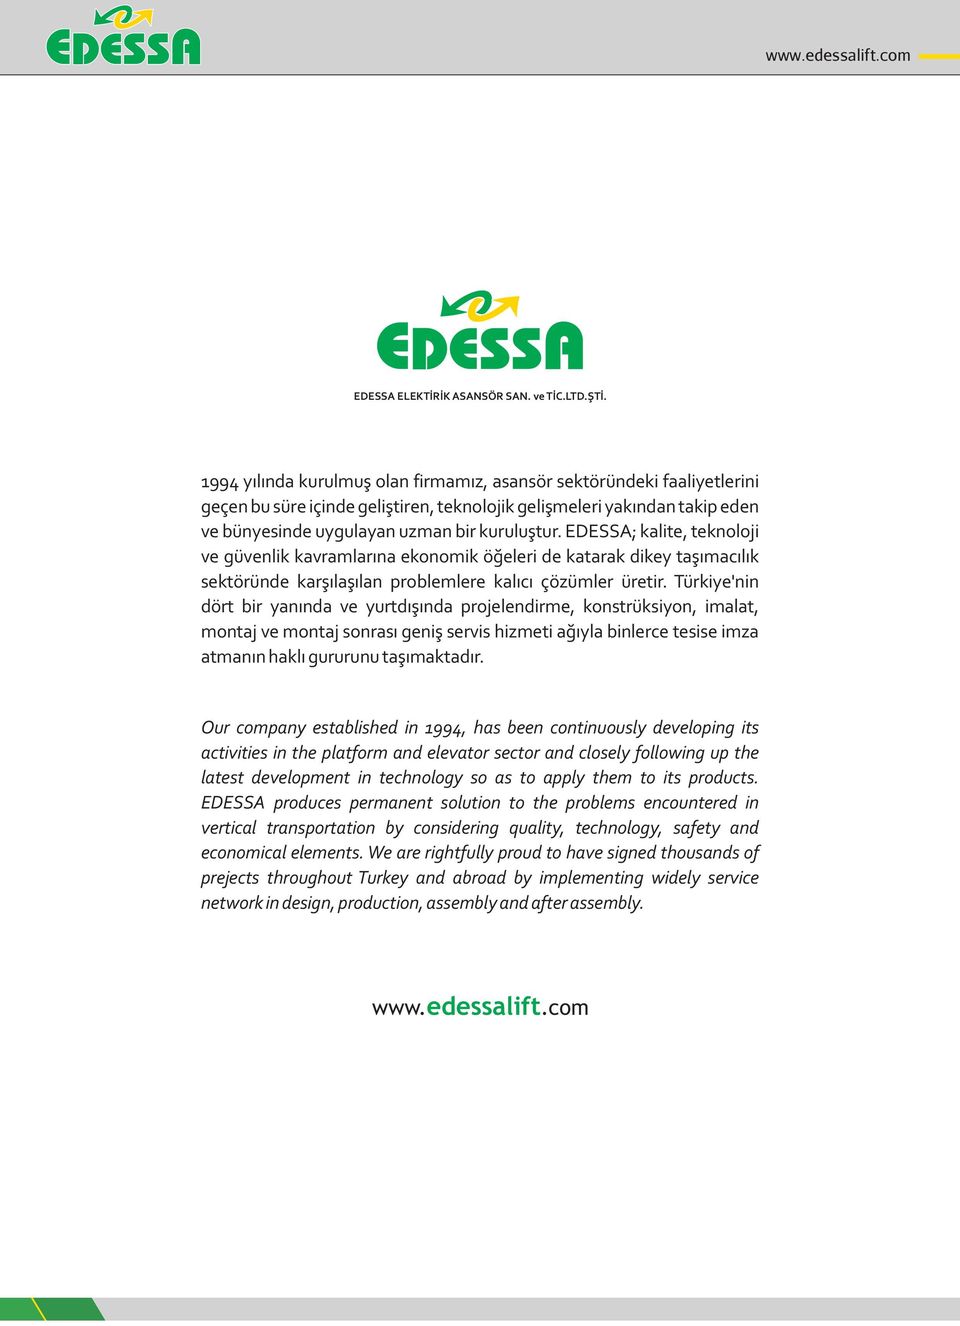 EDESSA; kalite, teknoloji ve güvenlik kavramlarına ekonomik öğeleri de katarak dikey taşımacılık sektöründe karşılaşılan problemlere kalıcı çözümler üretir.